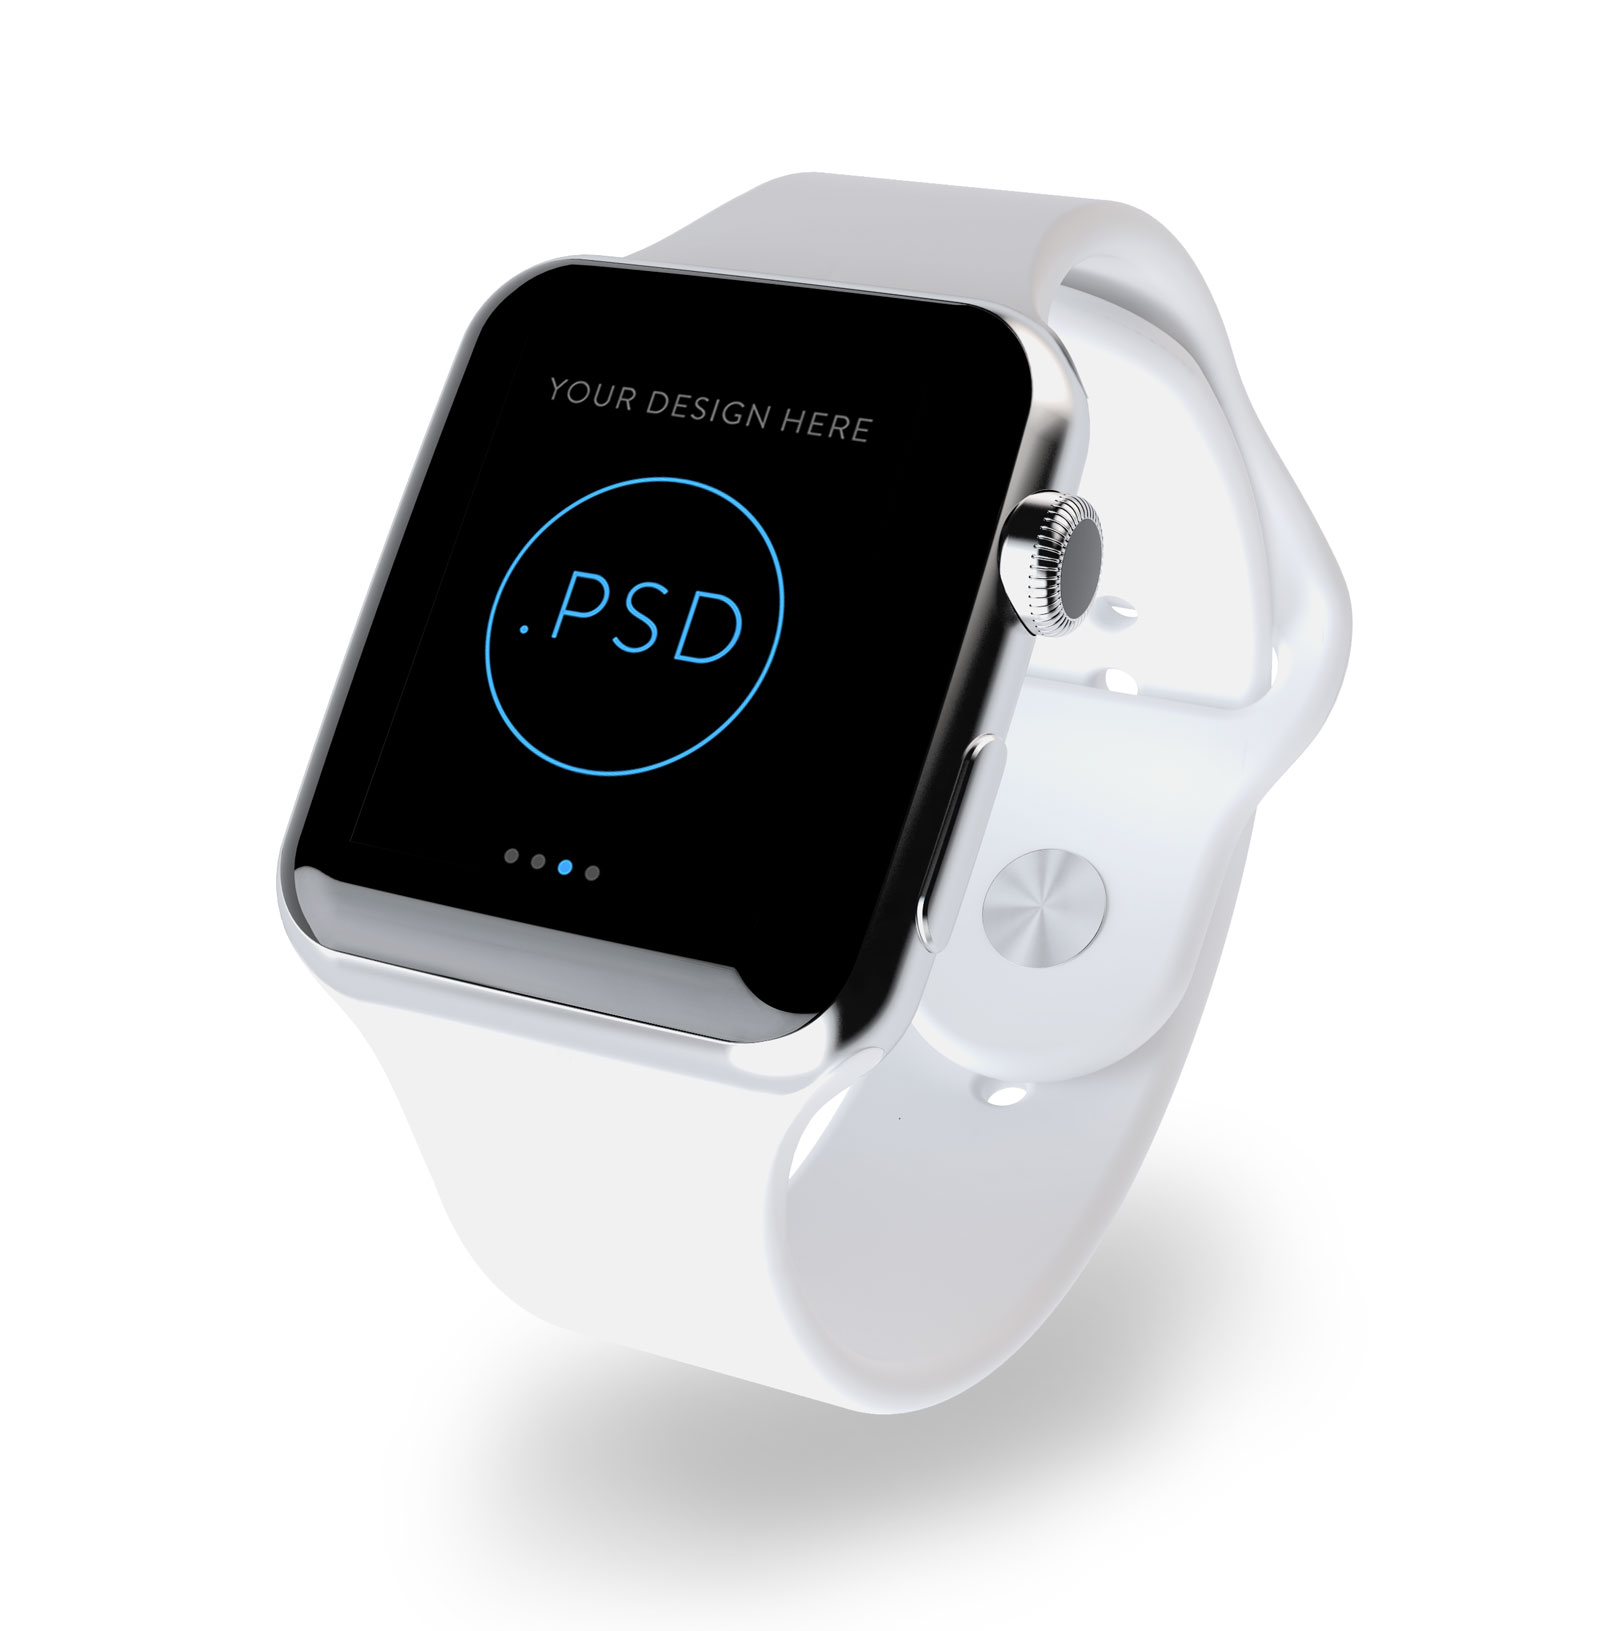 不同色系Apple Watch苹果手表.PSD模型 Apple Watch Mockup